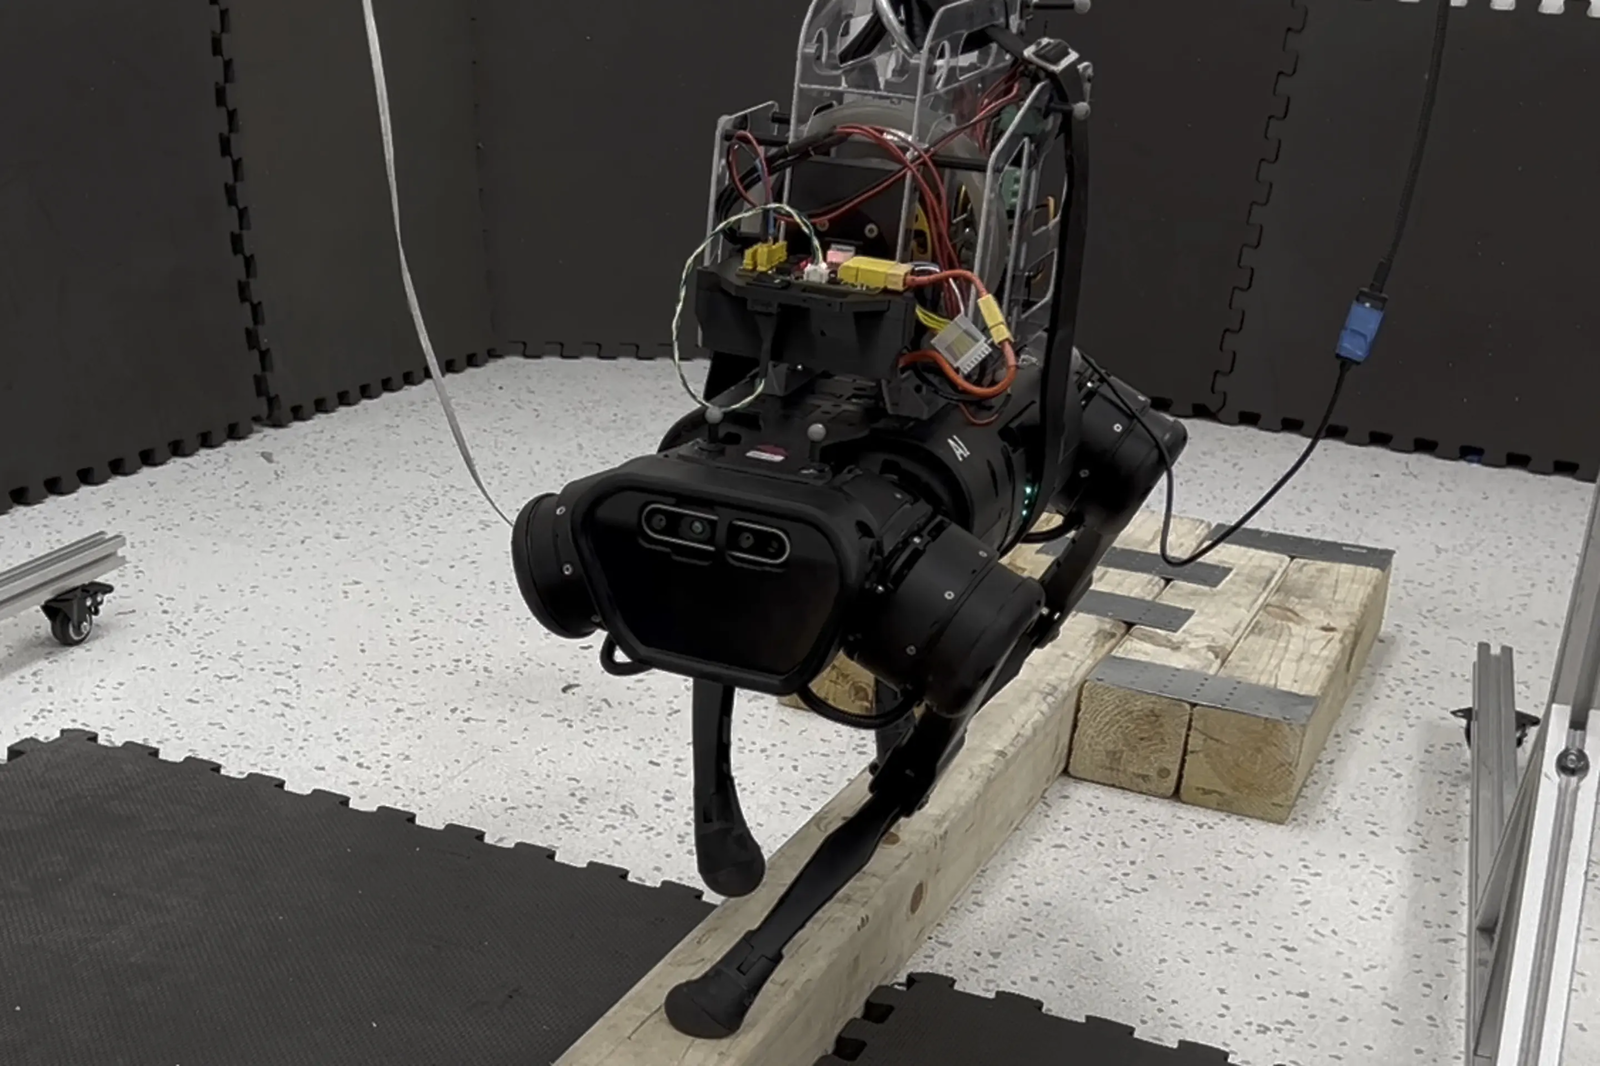 Le robot quadrupède utilise une technologie employée sur les satellites pour maintenir son équilibre. © Université Carnegie Mellon